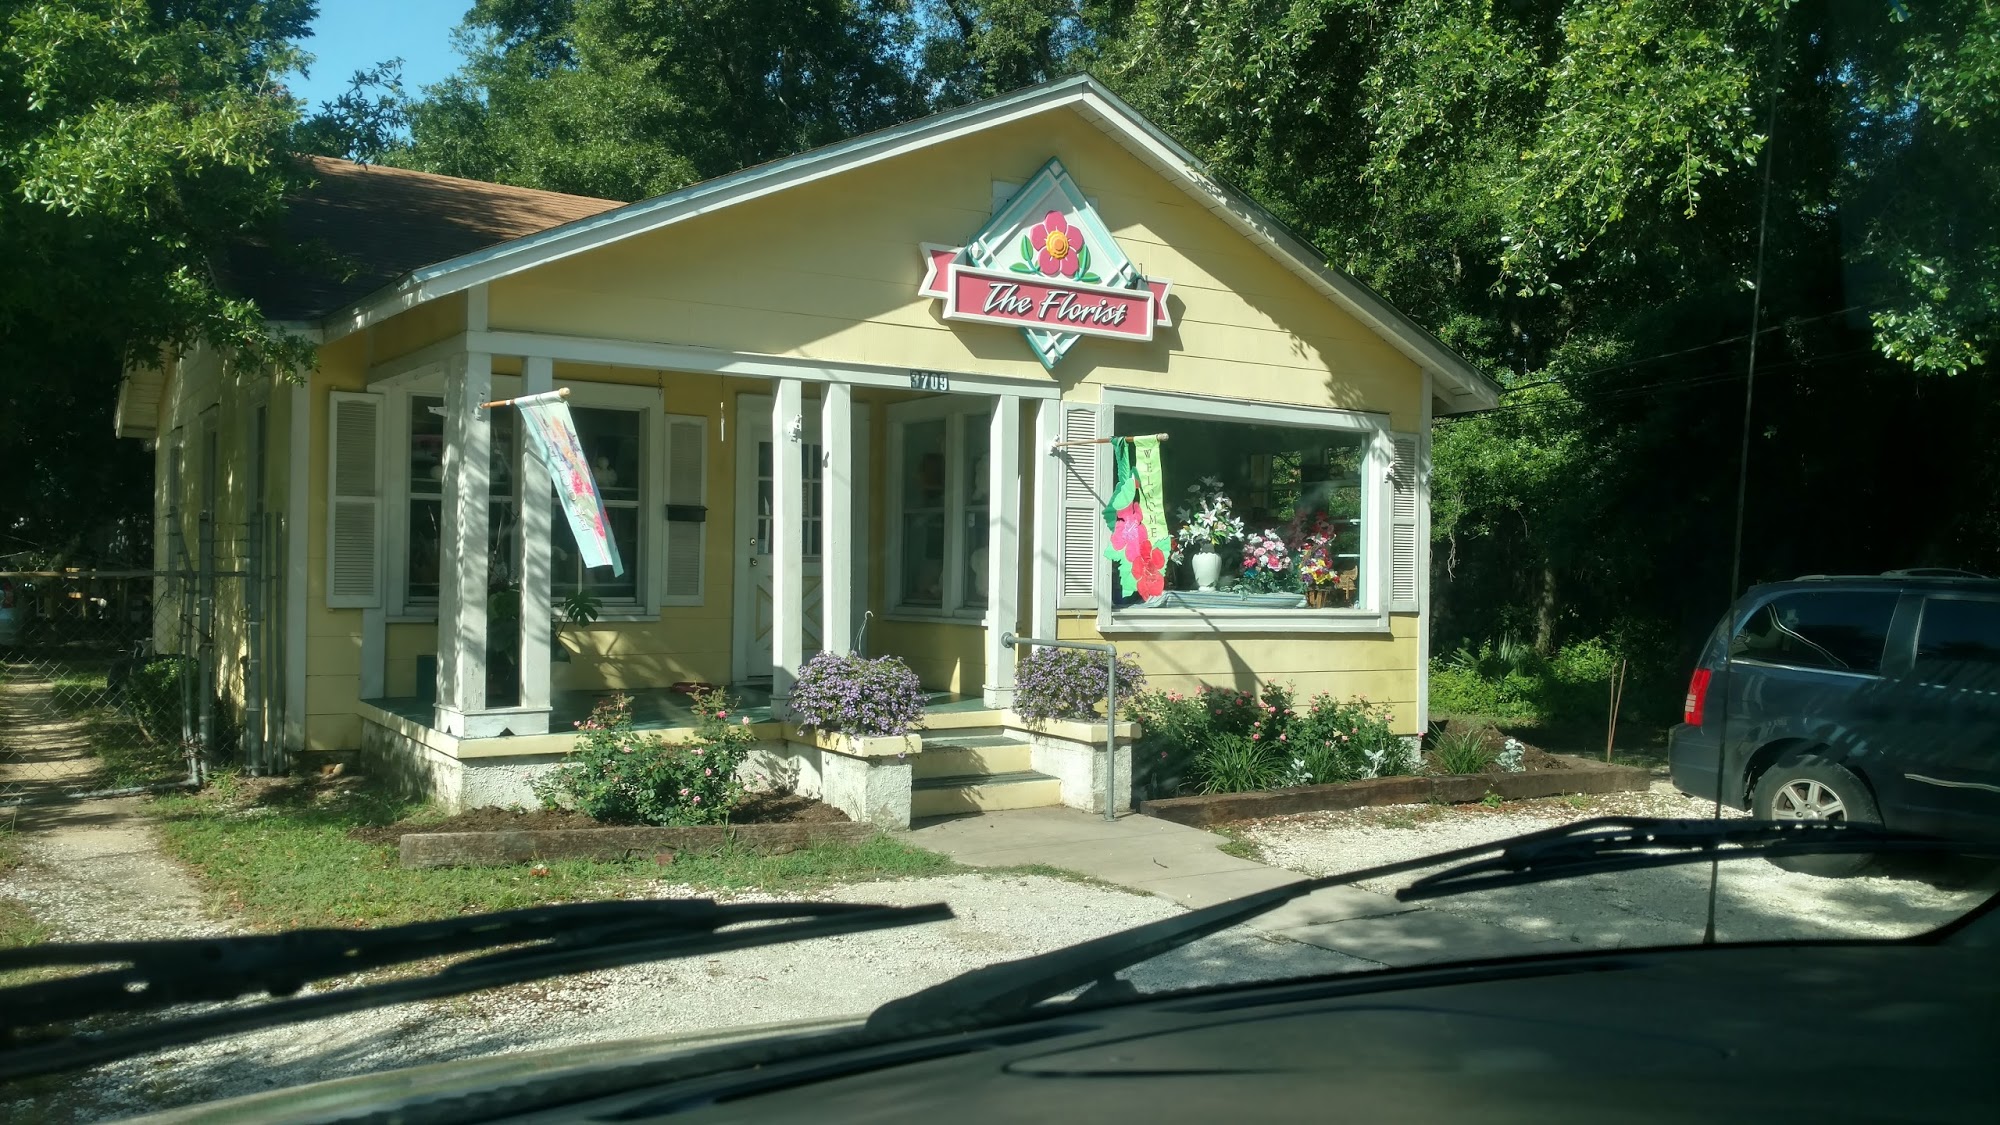 A Flower Shop